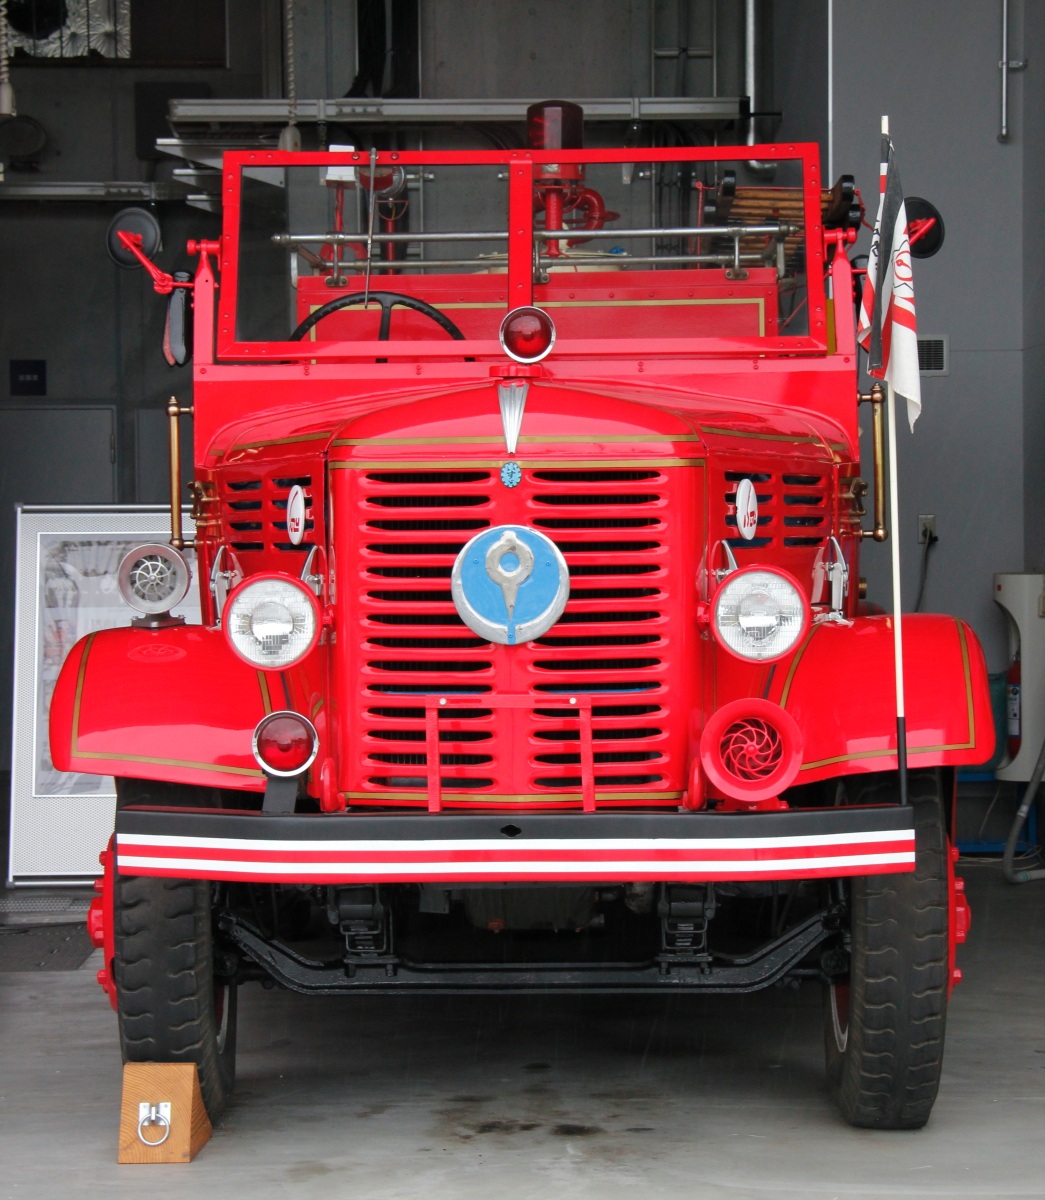 起源は八戸 日本初の国産タンク消防車 冴えないブログの綴りかた